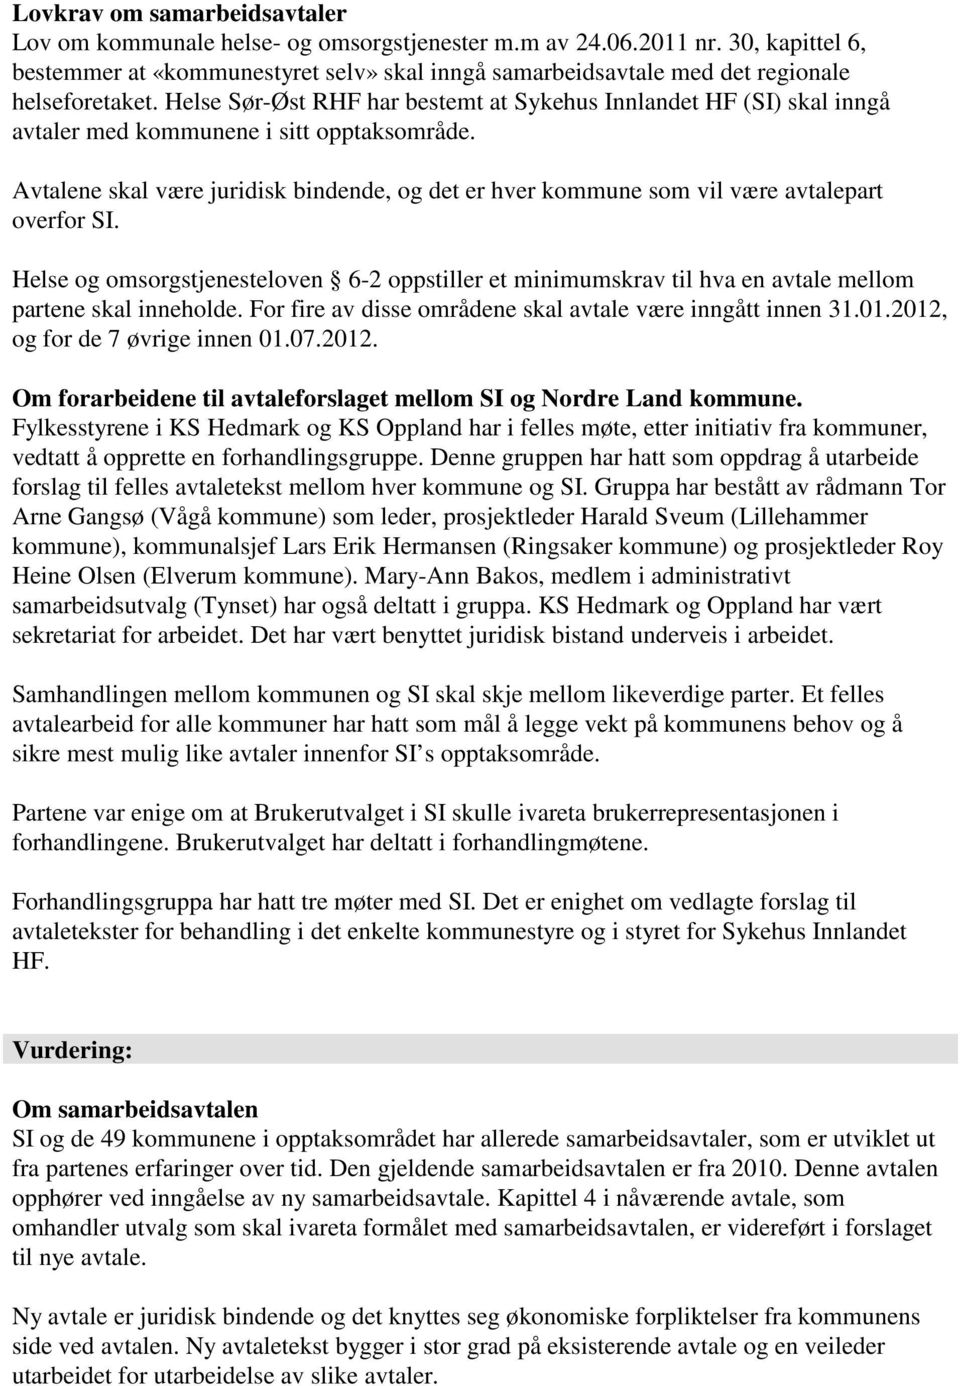 Helse Sør-Øst RHF har bestemt at Sykehus Innlandet HF (SI) skal inngå avtaler med kommunene i sitt opptaksområde.